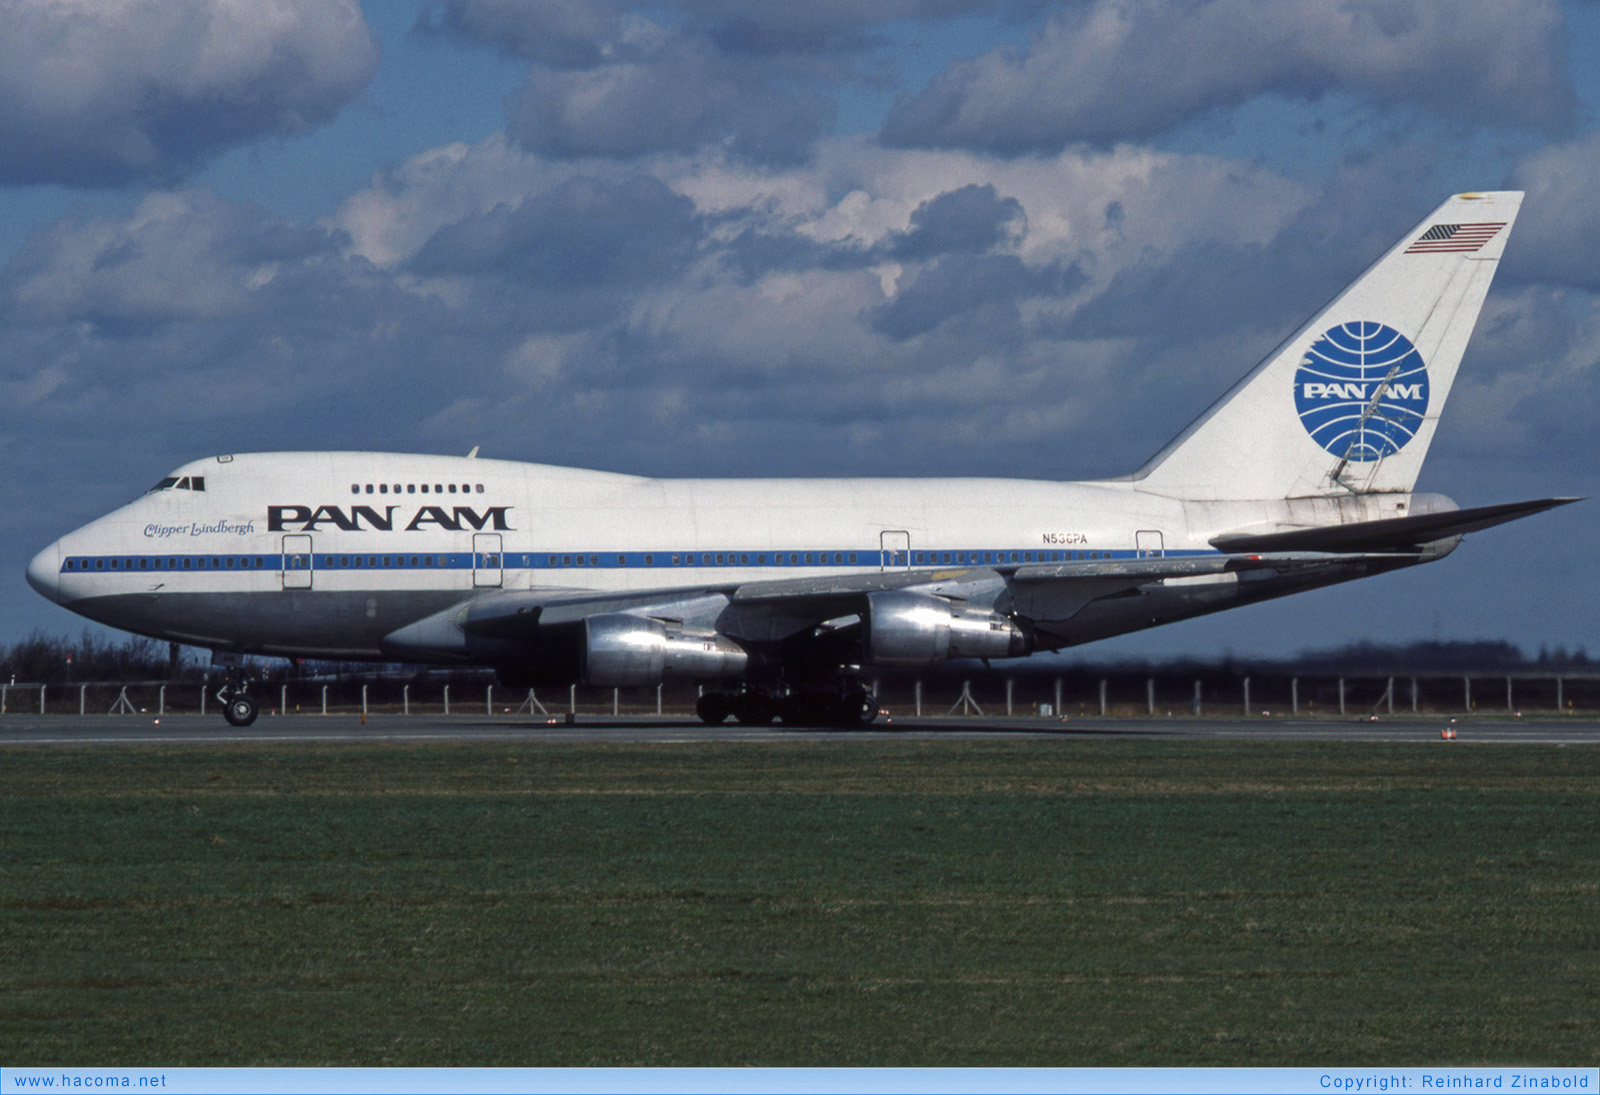 Photo of N536PA - Pan Am Clipper Lindbergh - Munich-Riem Airport